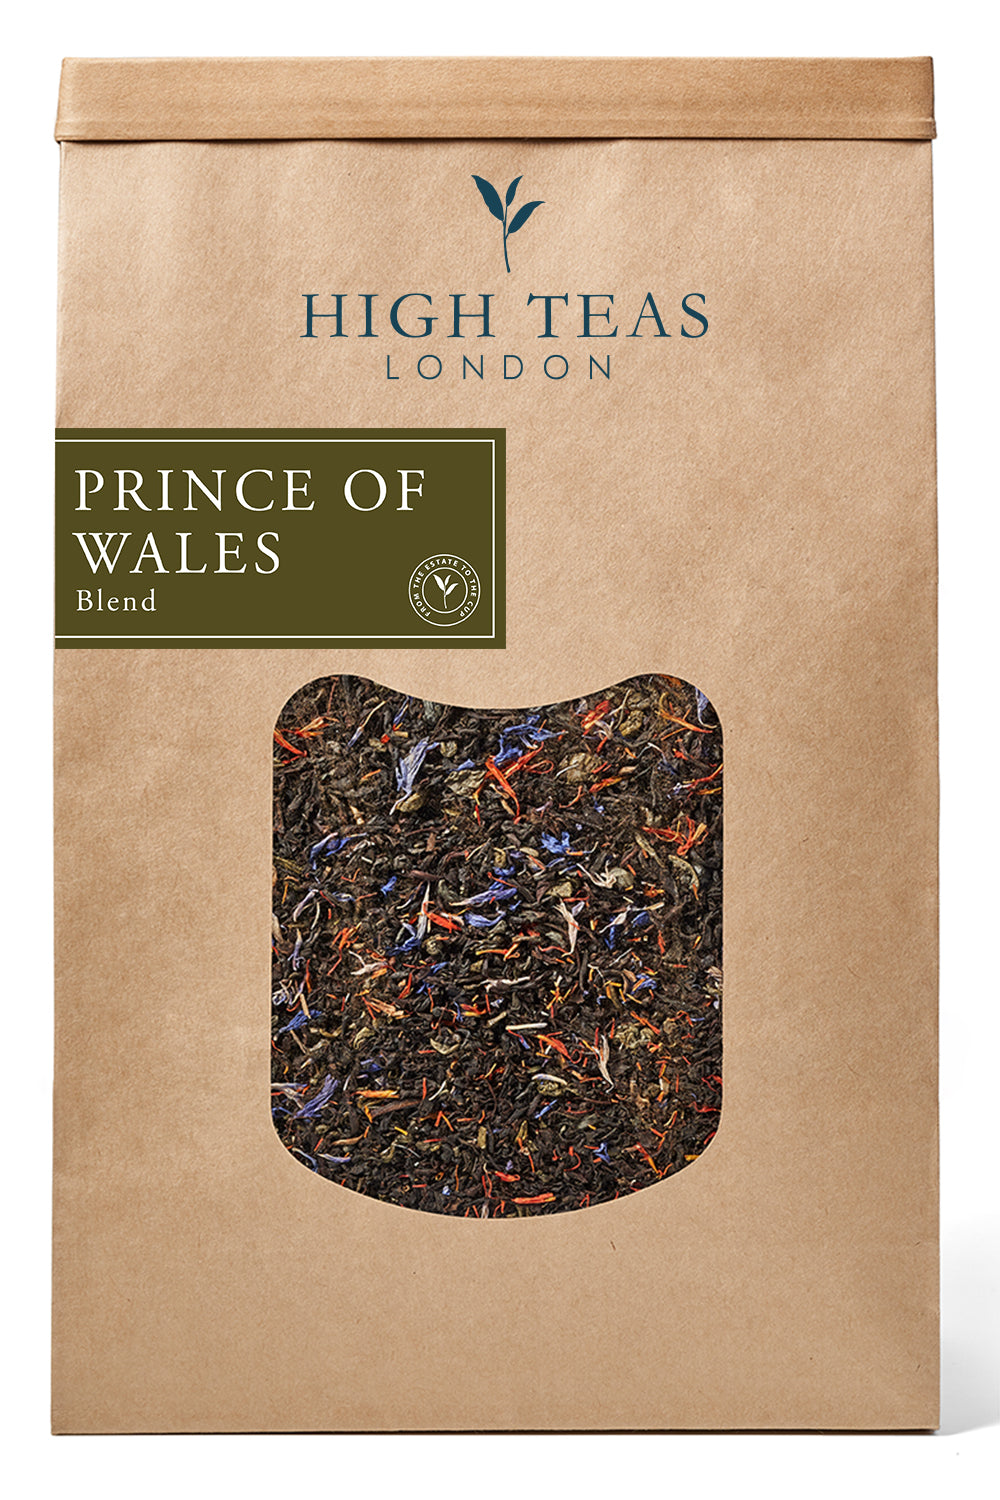 Prince of Wales-500g-Loose Leaf Tea-High Teas